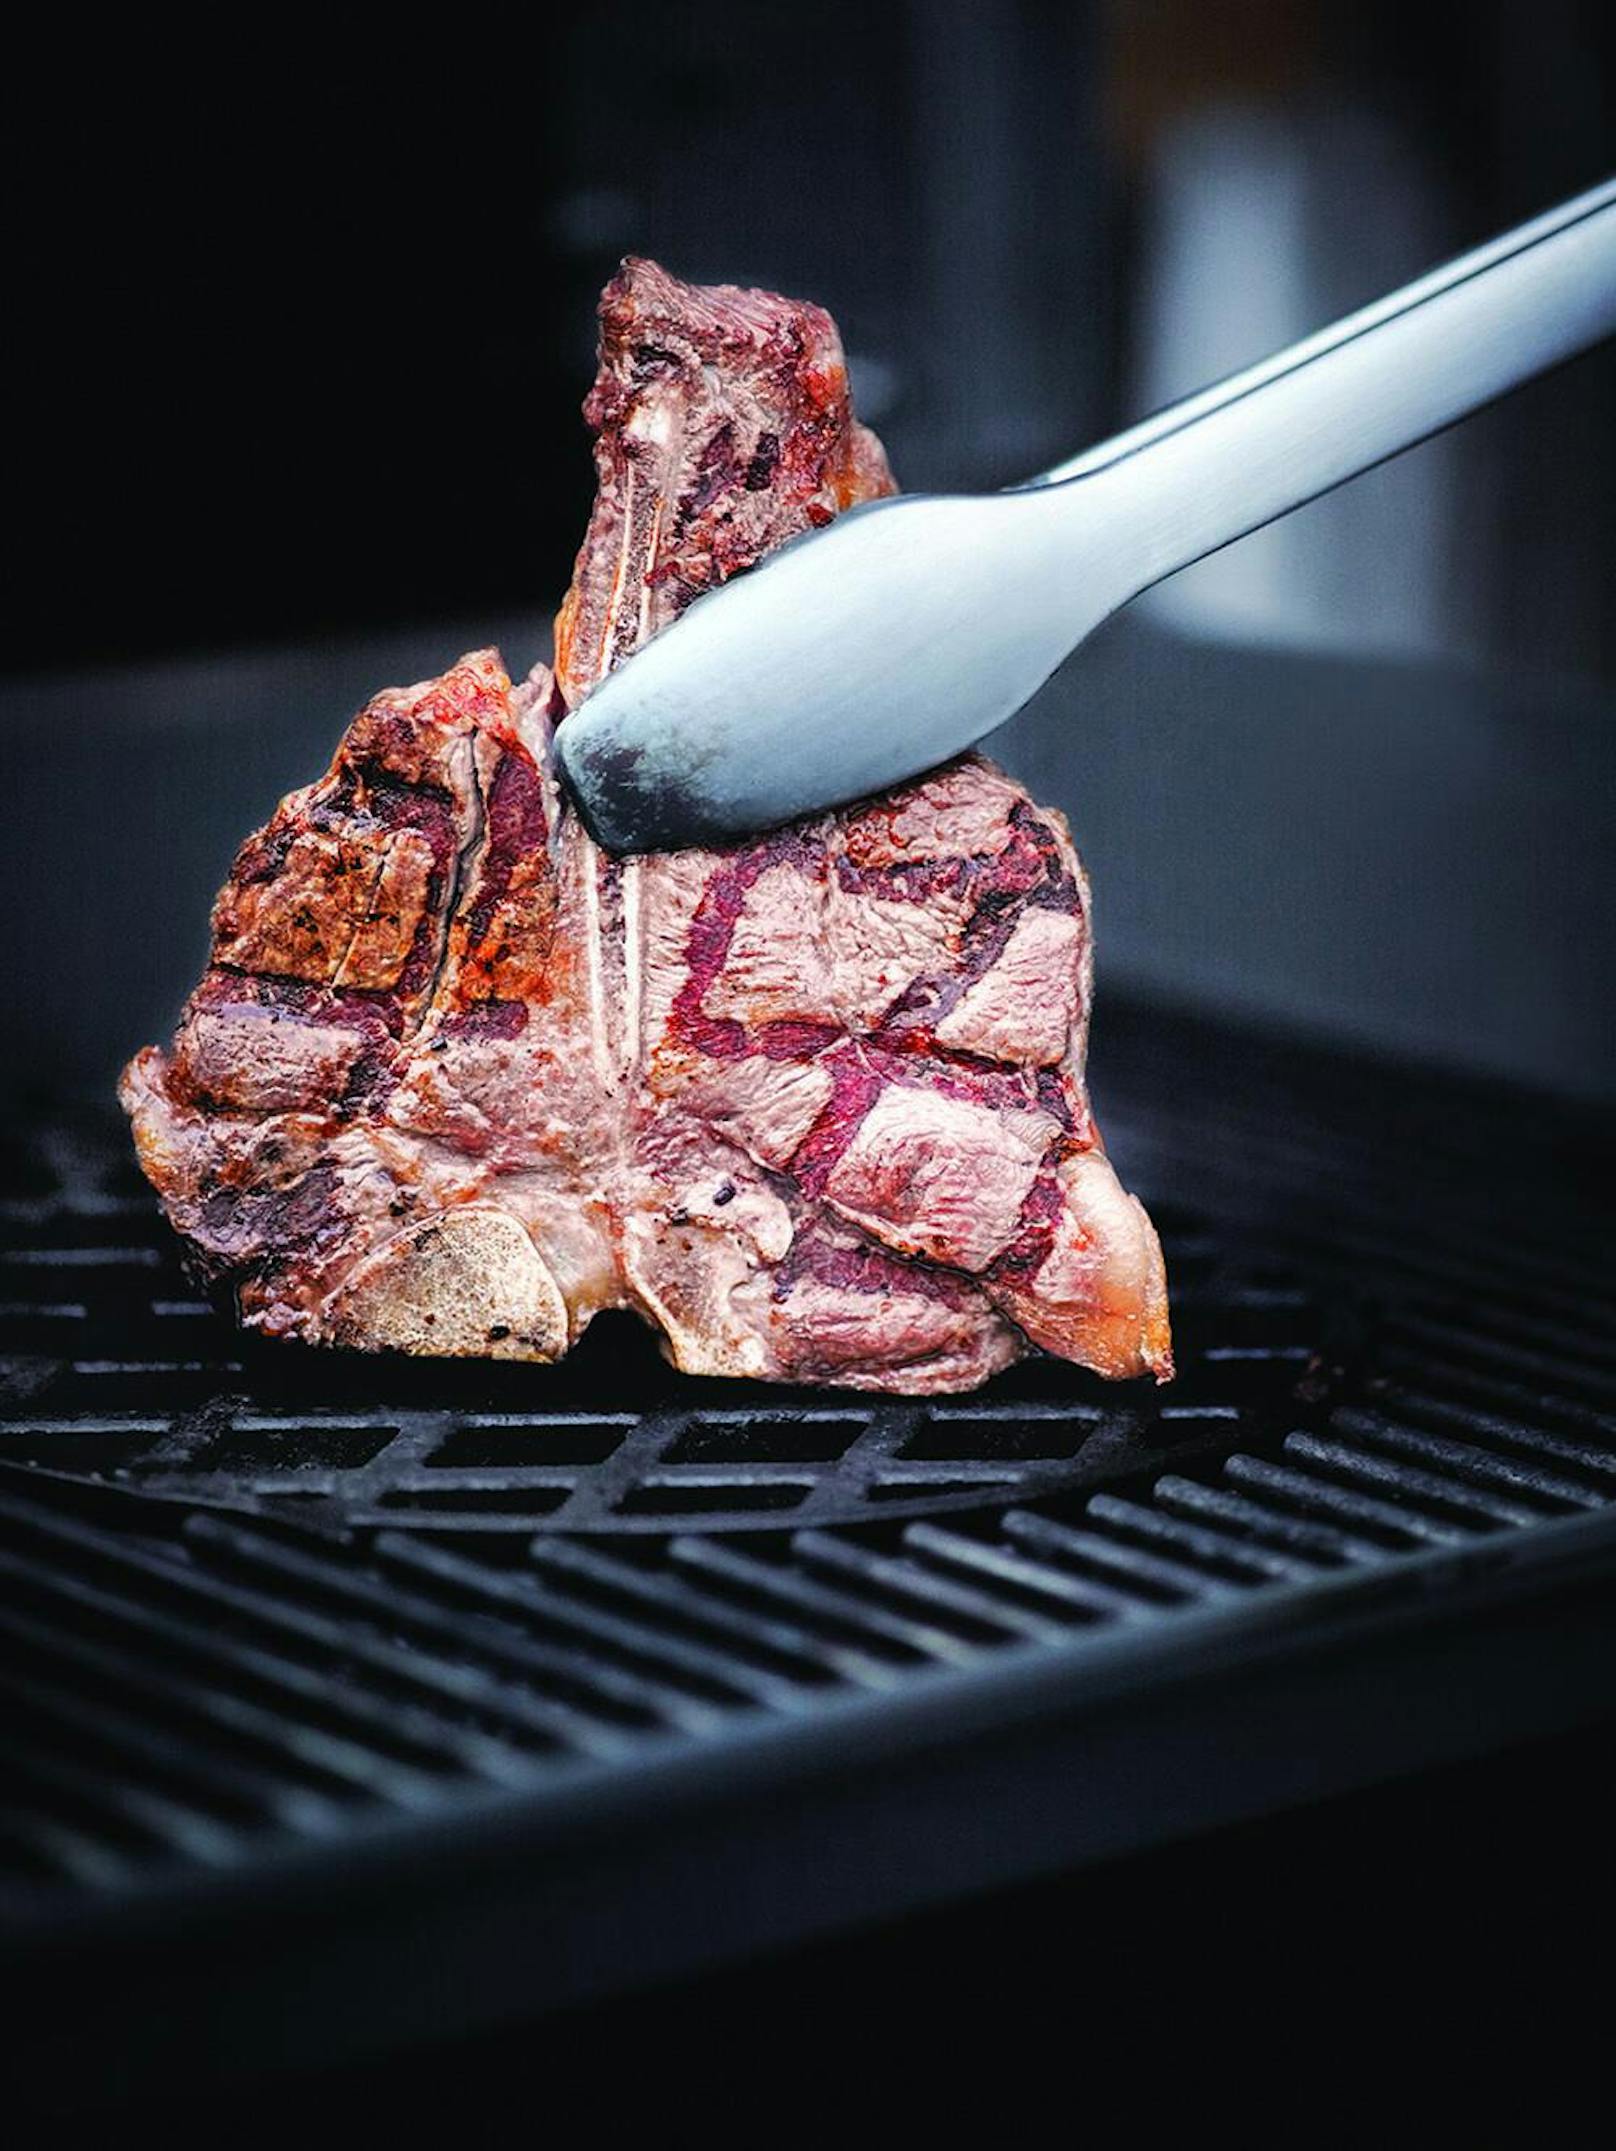 2. Nehmen Sie das Fleisch bereits einige Stunden vor dem Grillen aus dem Kühlschrank.